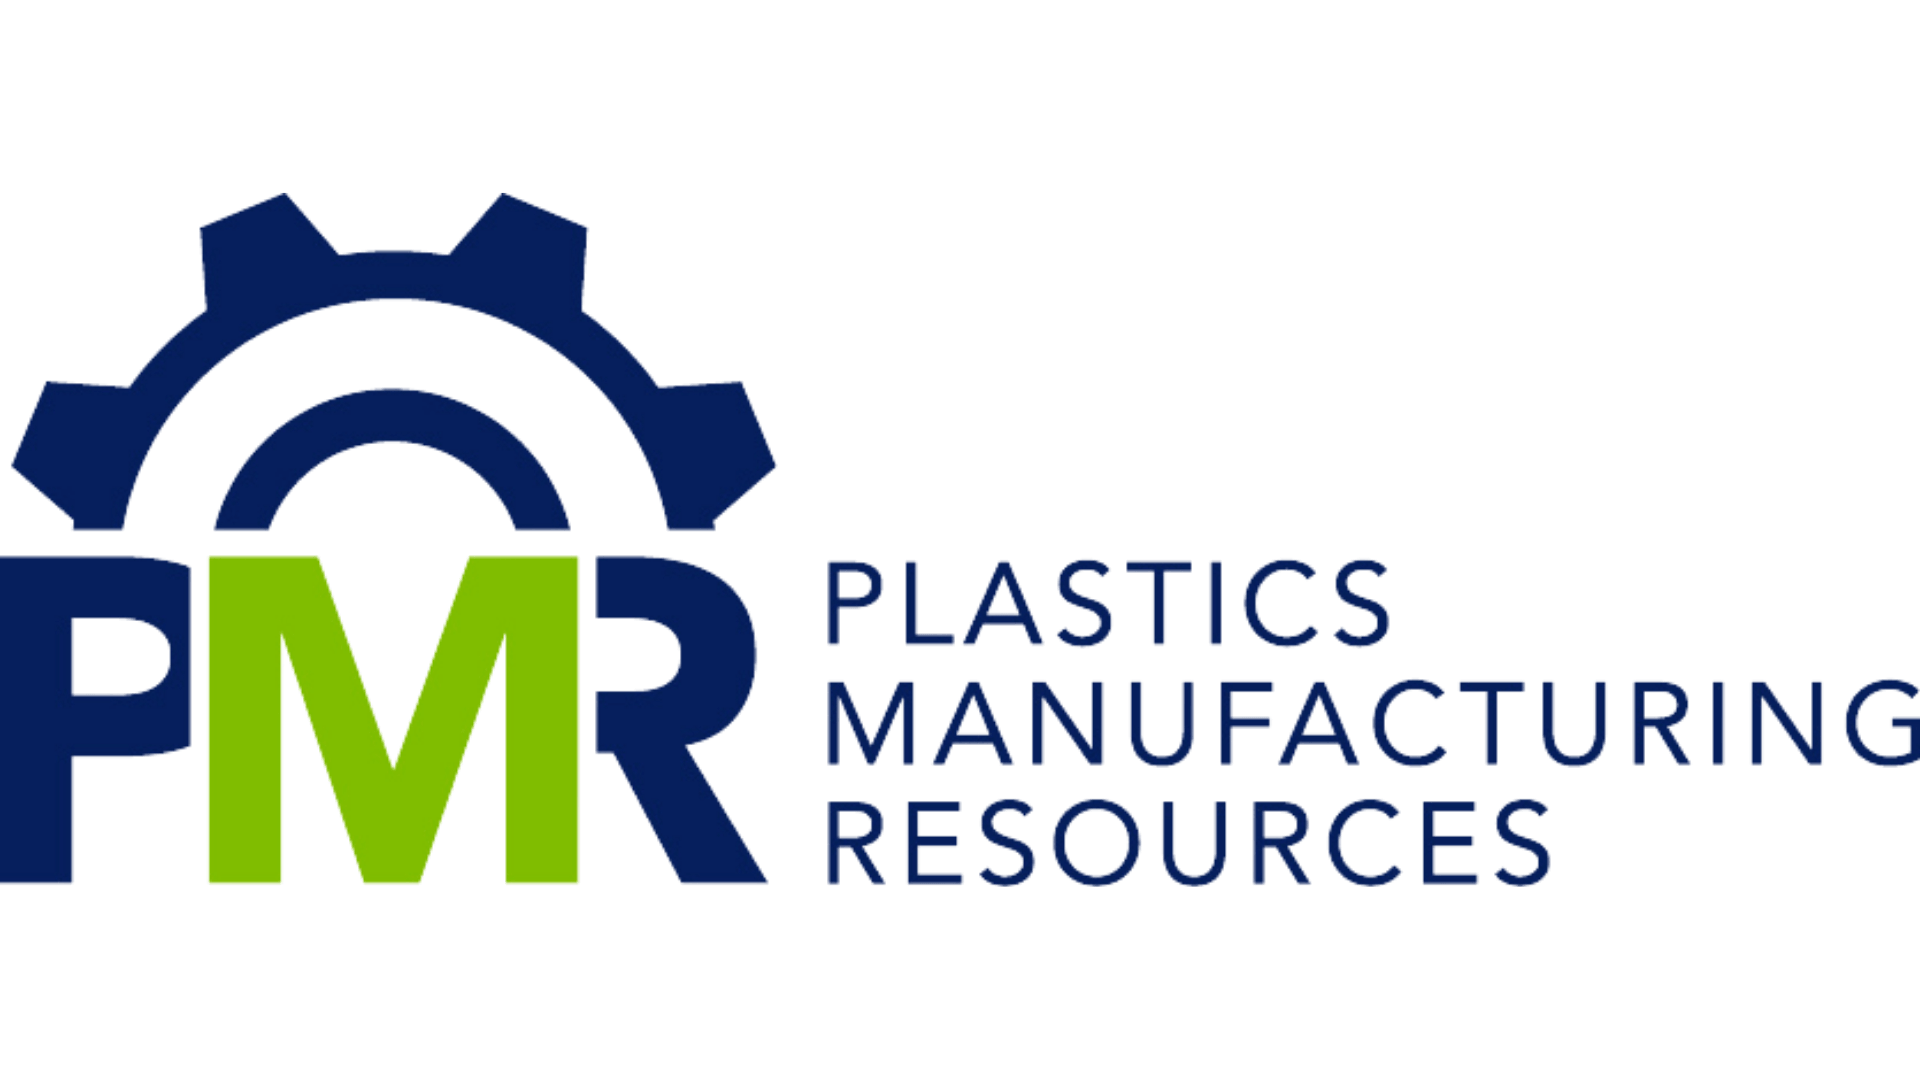 Plastics Manufacturing Resources 